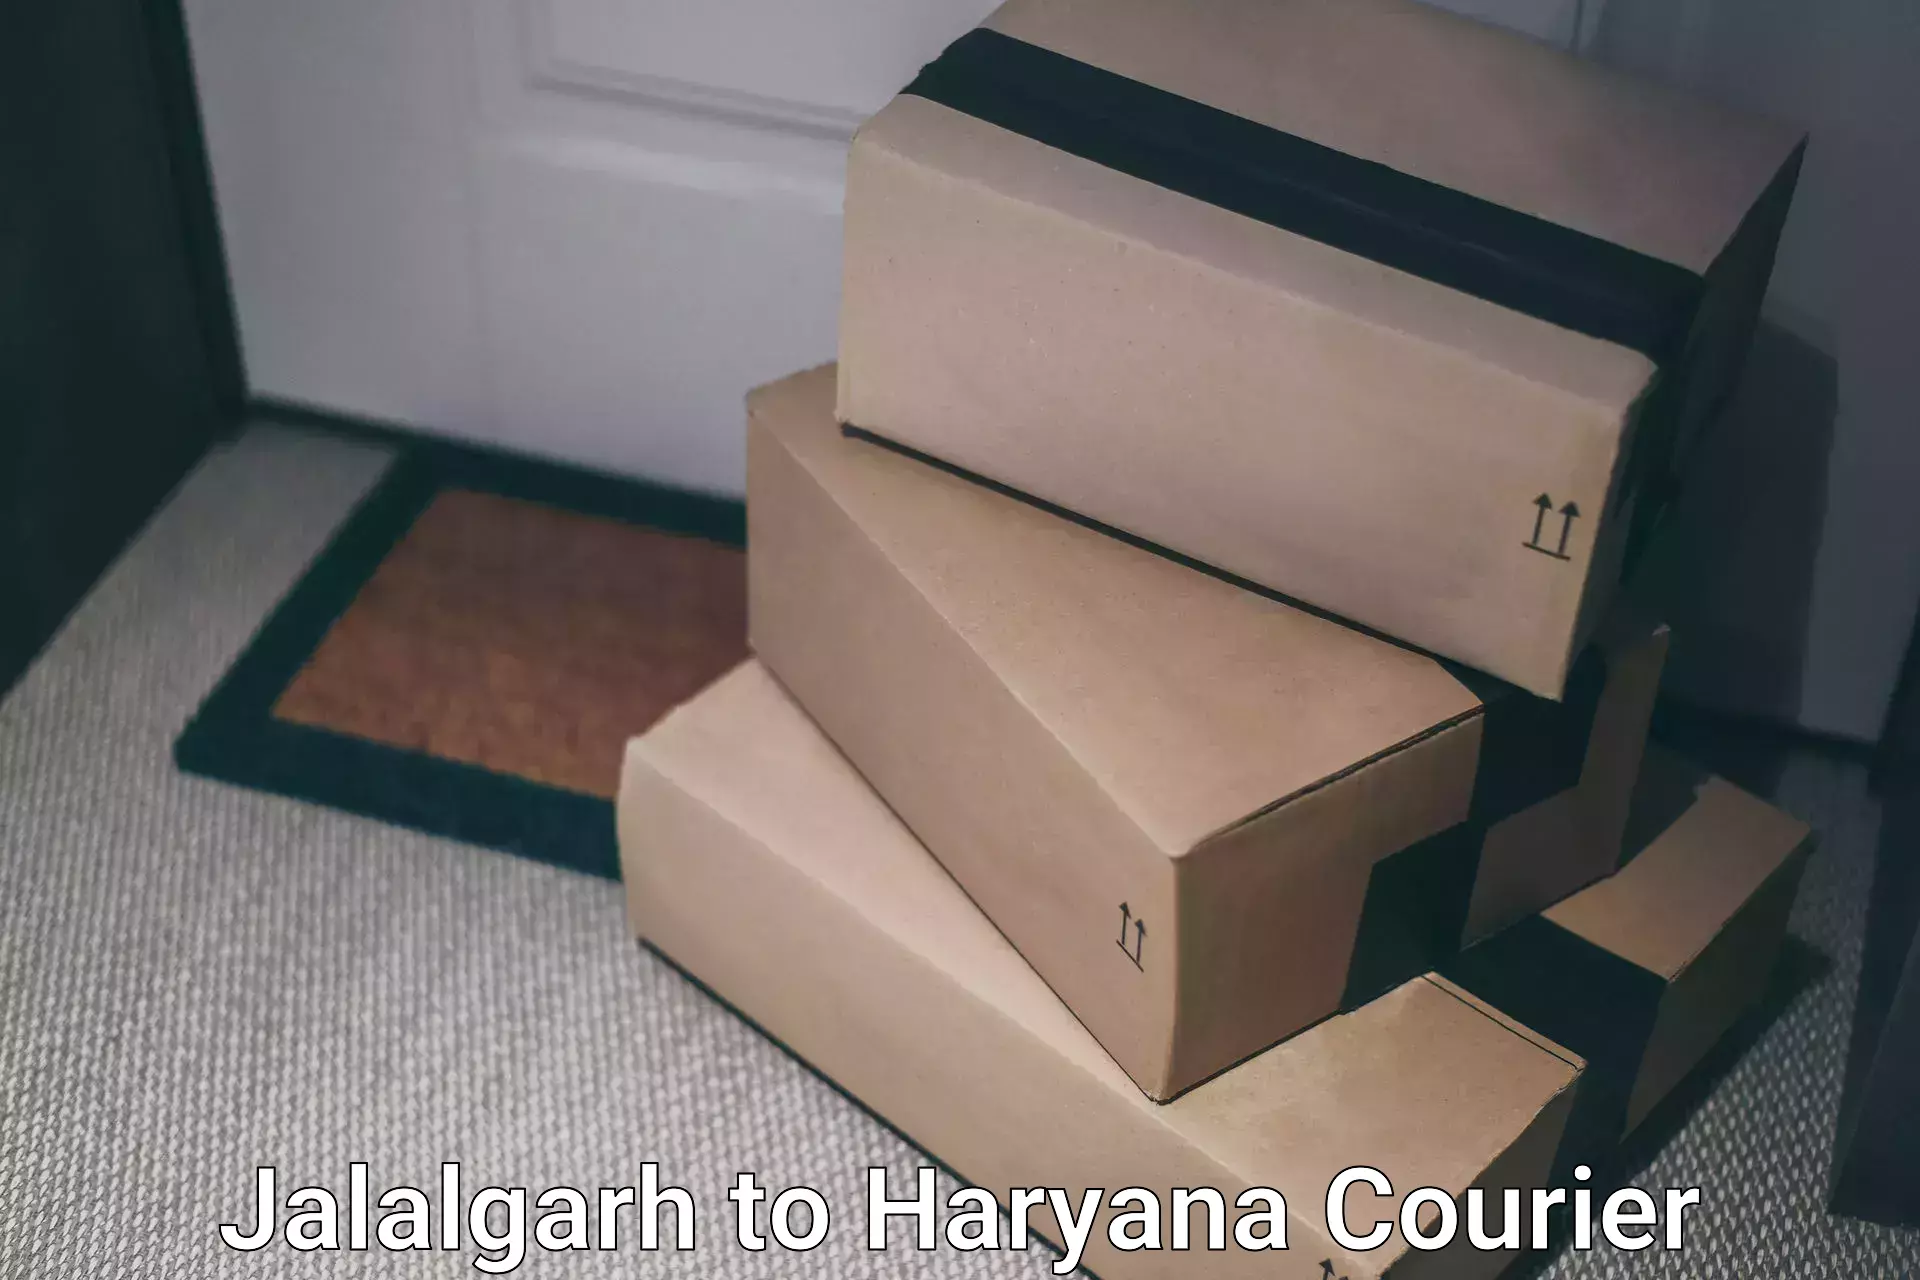 High-capacity parcel service Jalalgarh to Haryana